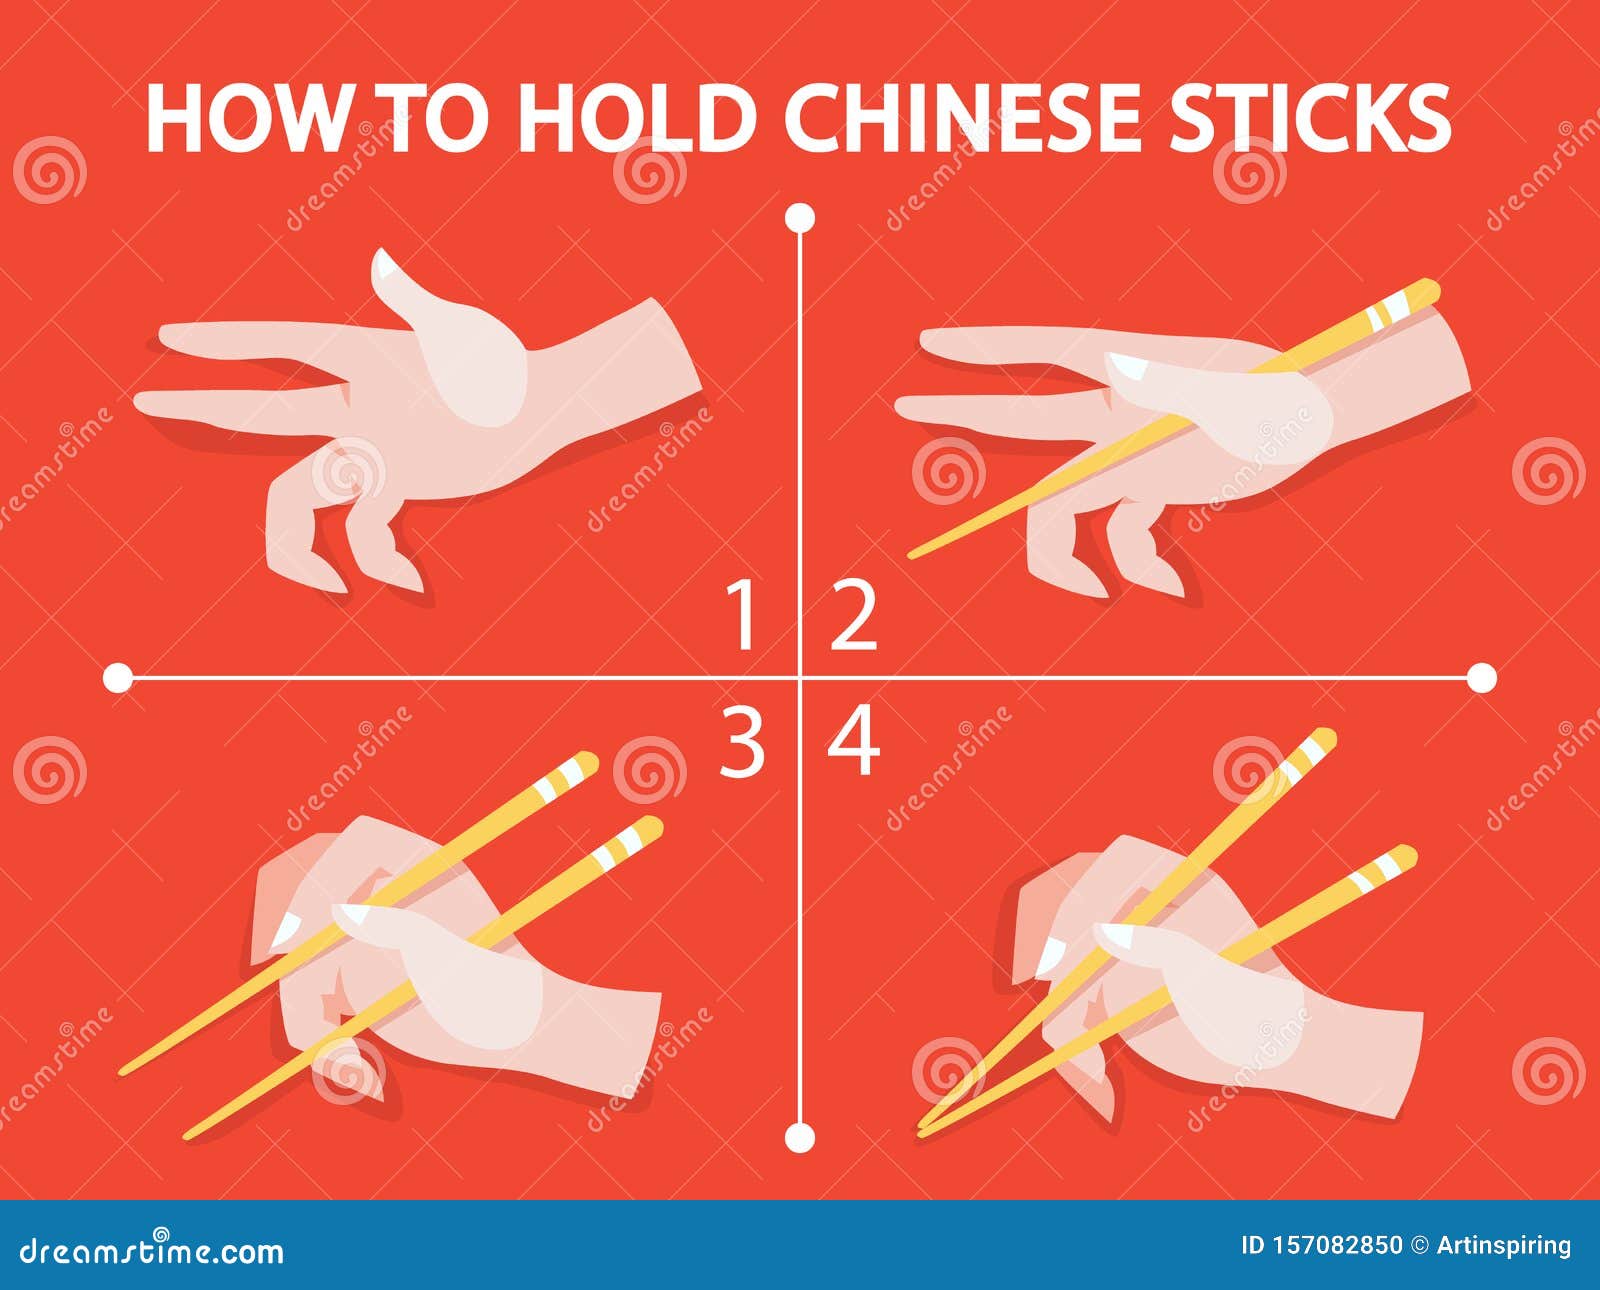 Comment utiliser les baguettes chinoises ?